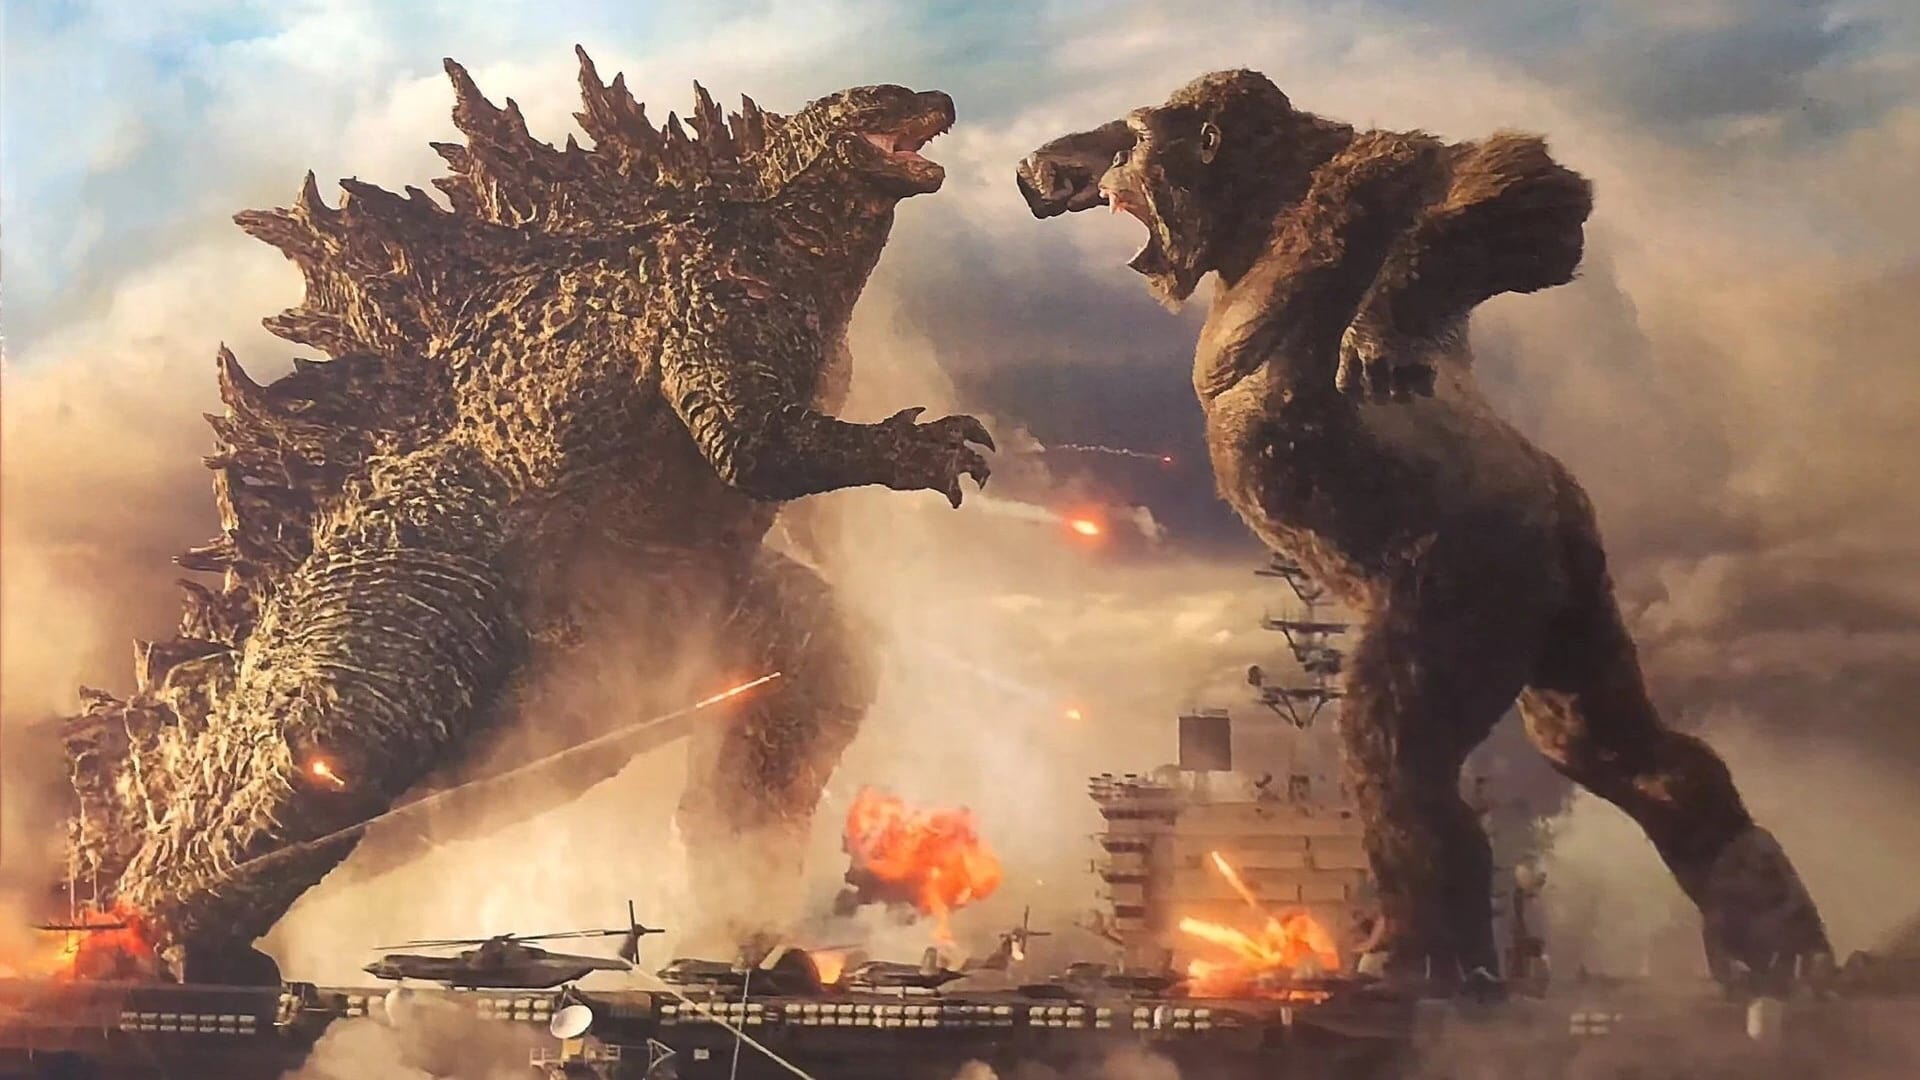 Promotional still from Godzilla vs. Kong